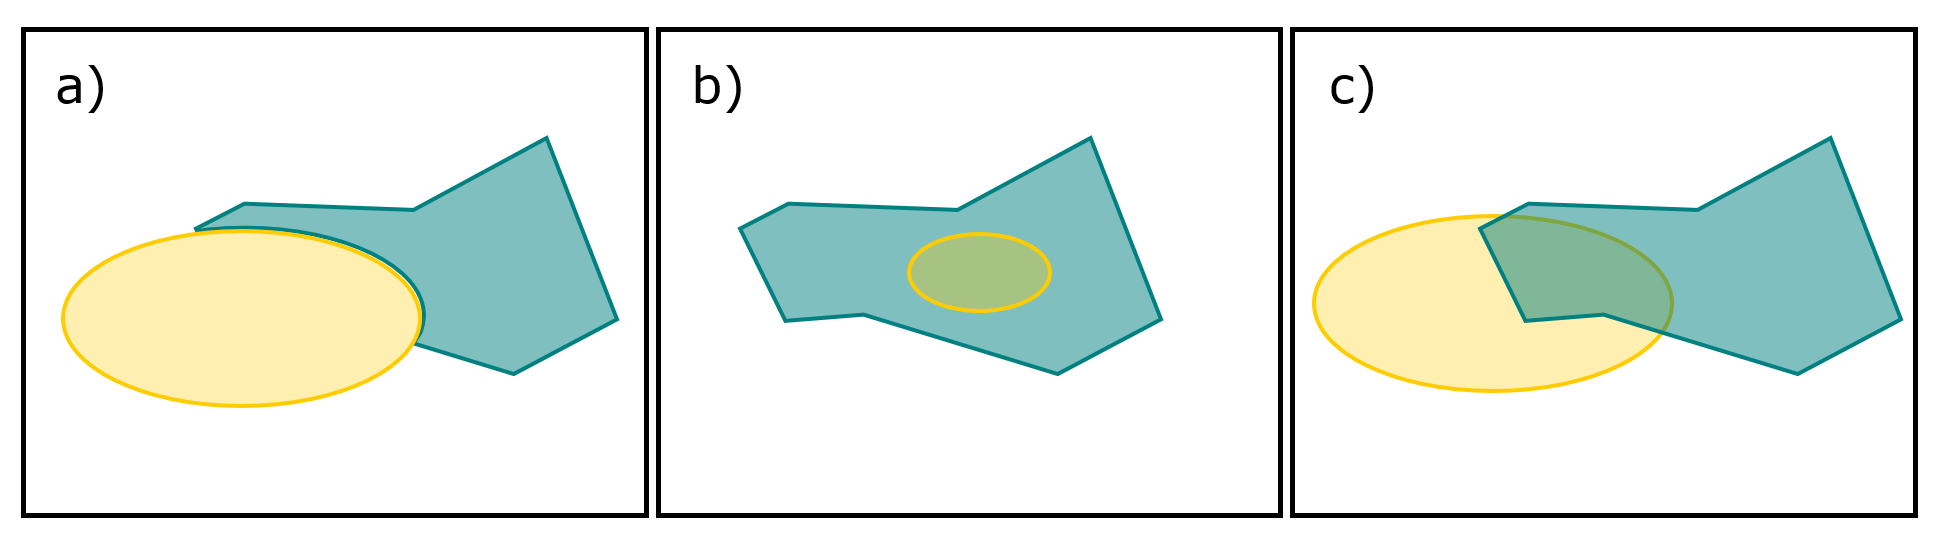 Exemples de relations spatiales entre deux entités spatiales : a) adjacence, b) inclusion, et c) intersection.